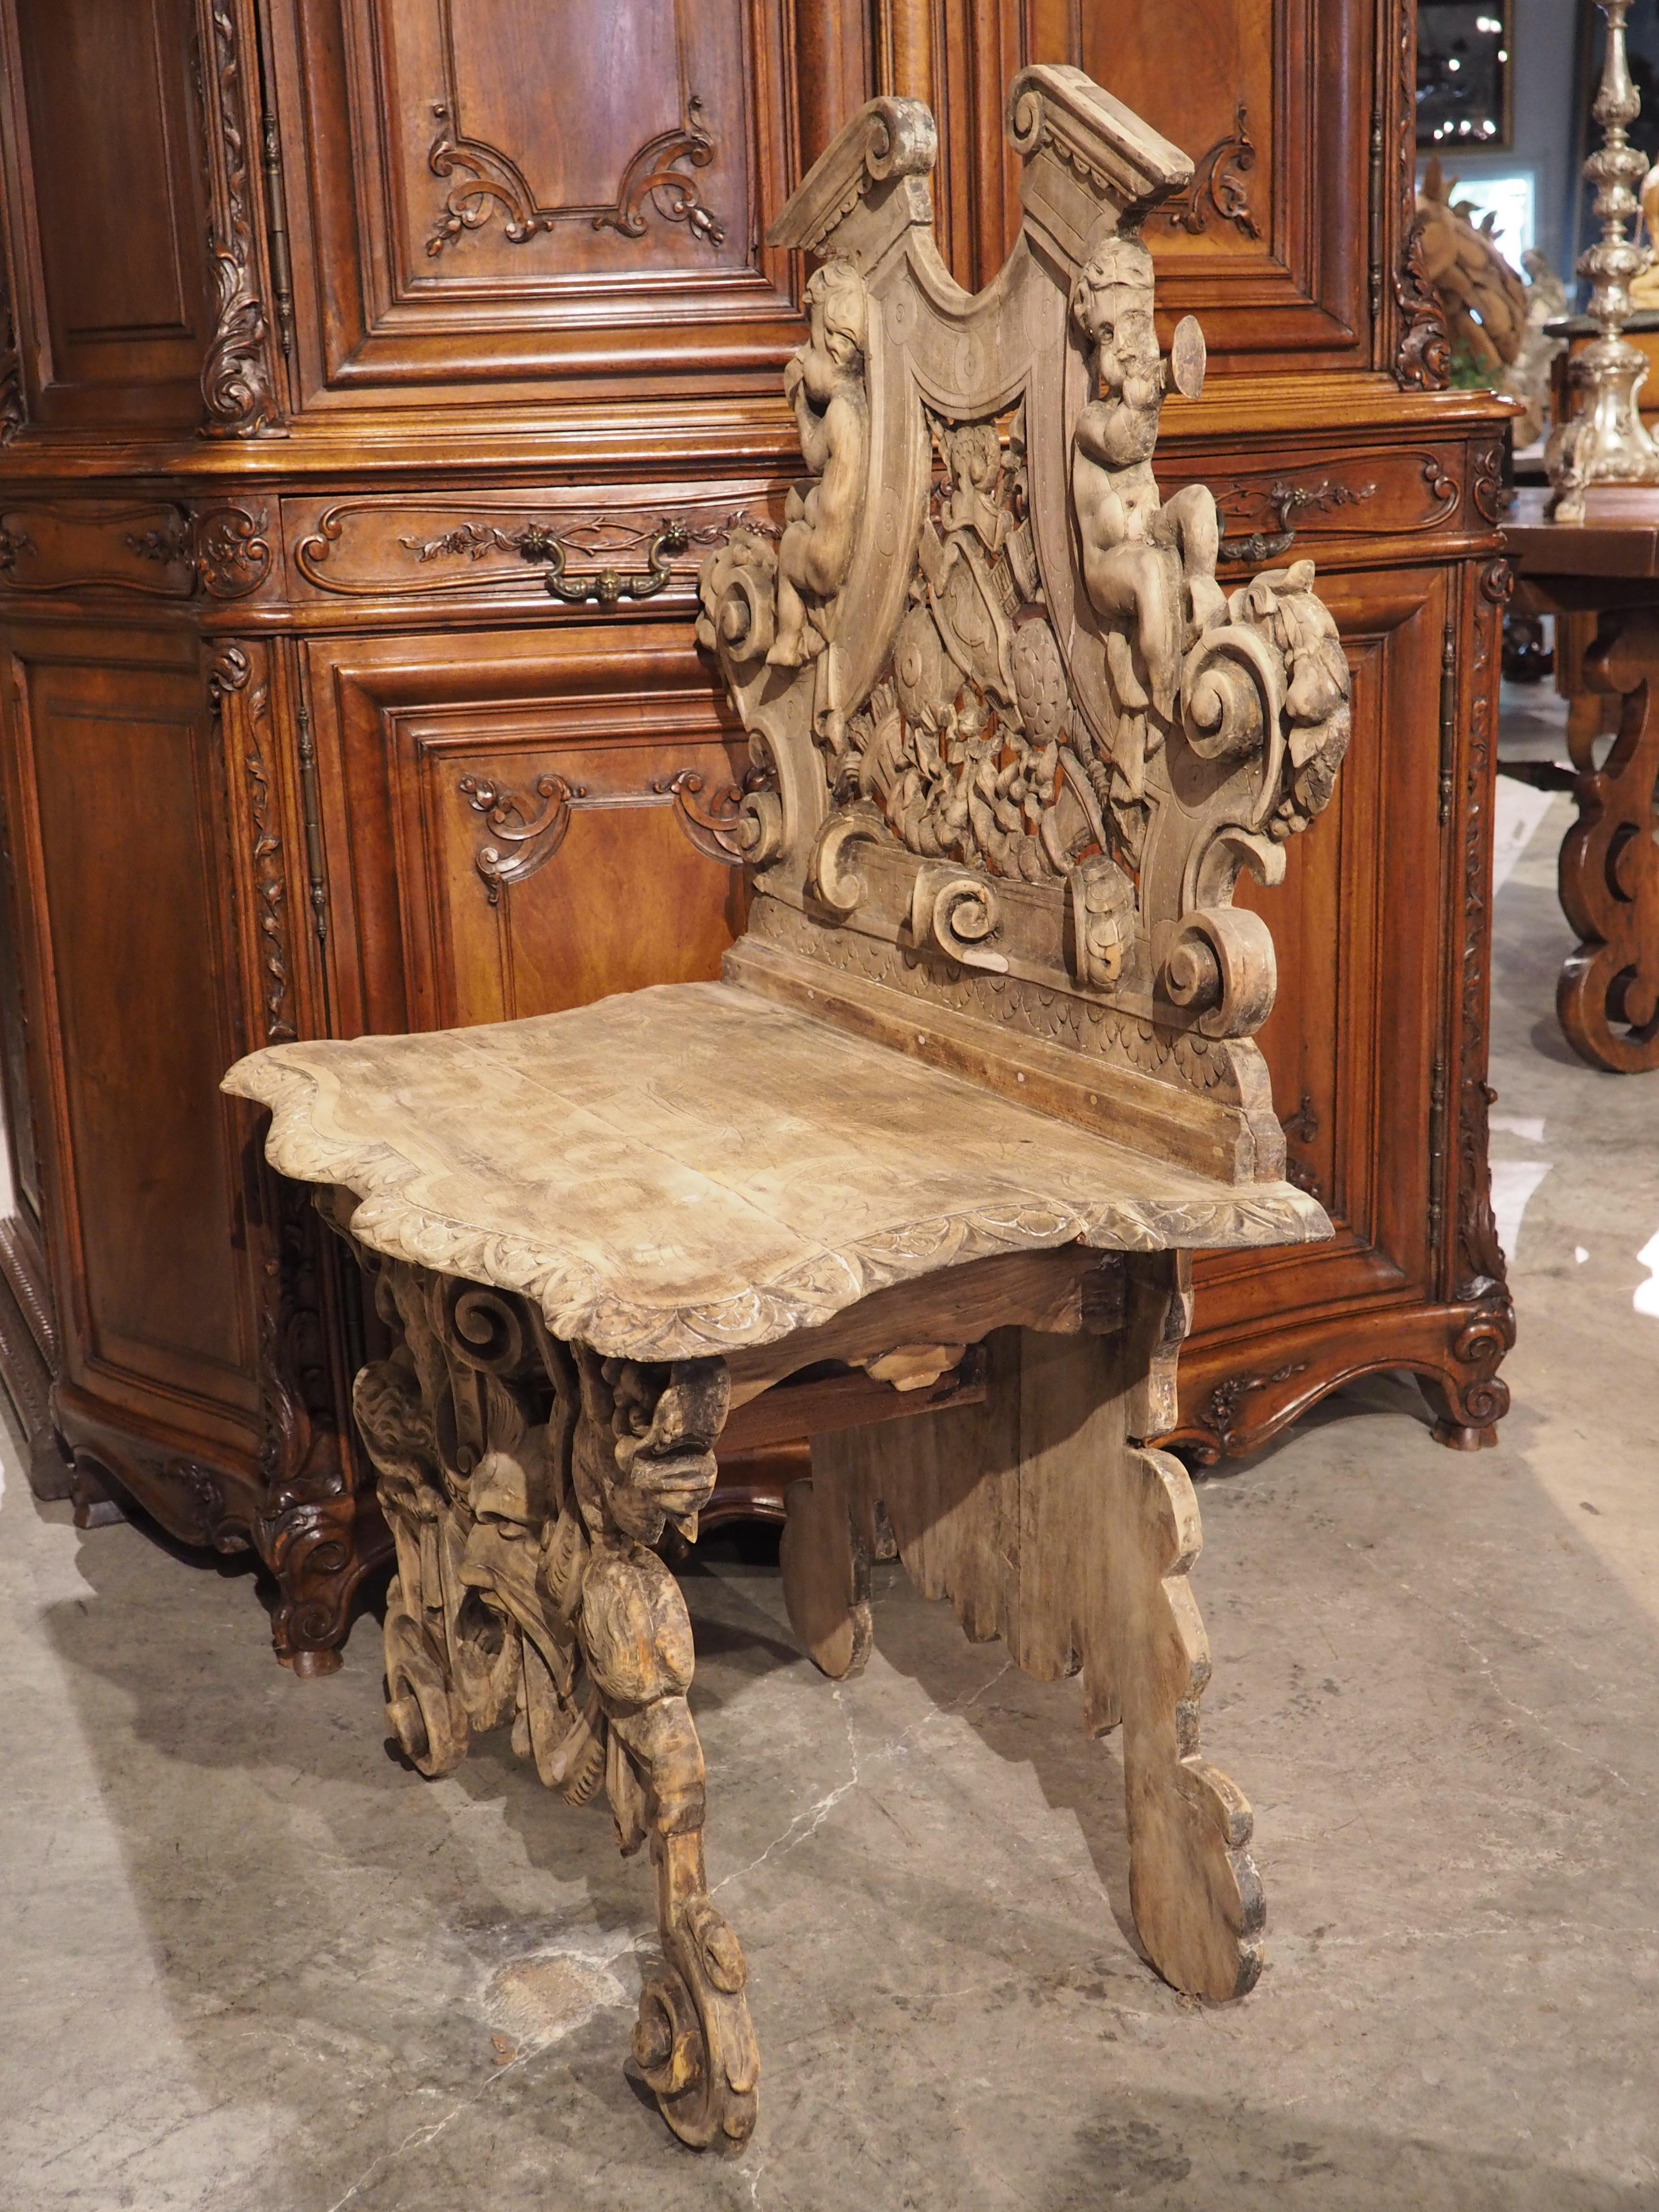 Ein sgabello ist ein italienischer Stuhl, der seinen Ursprung in der Renaissance hat. Ursprünglich für den Flur gedacht (wie ein französischer Beistellstuhl), waren sgabello in der Regel stark geschnitzt und mit einer Art Familienwappen versehen,